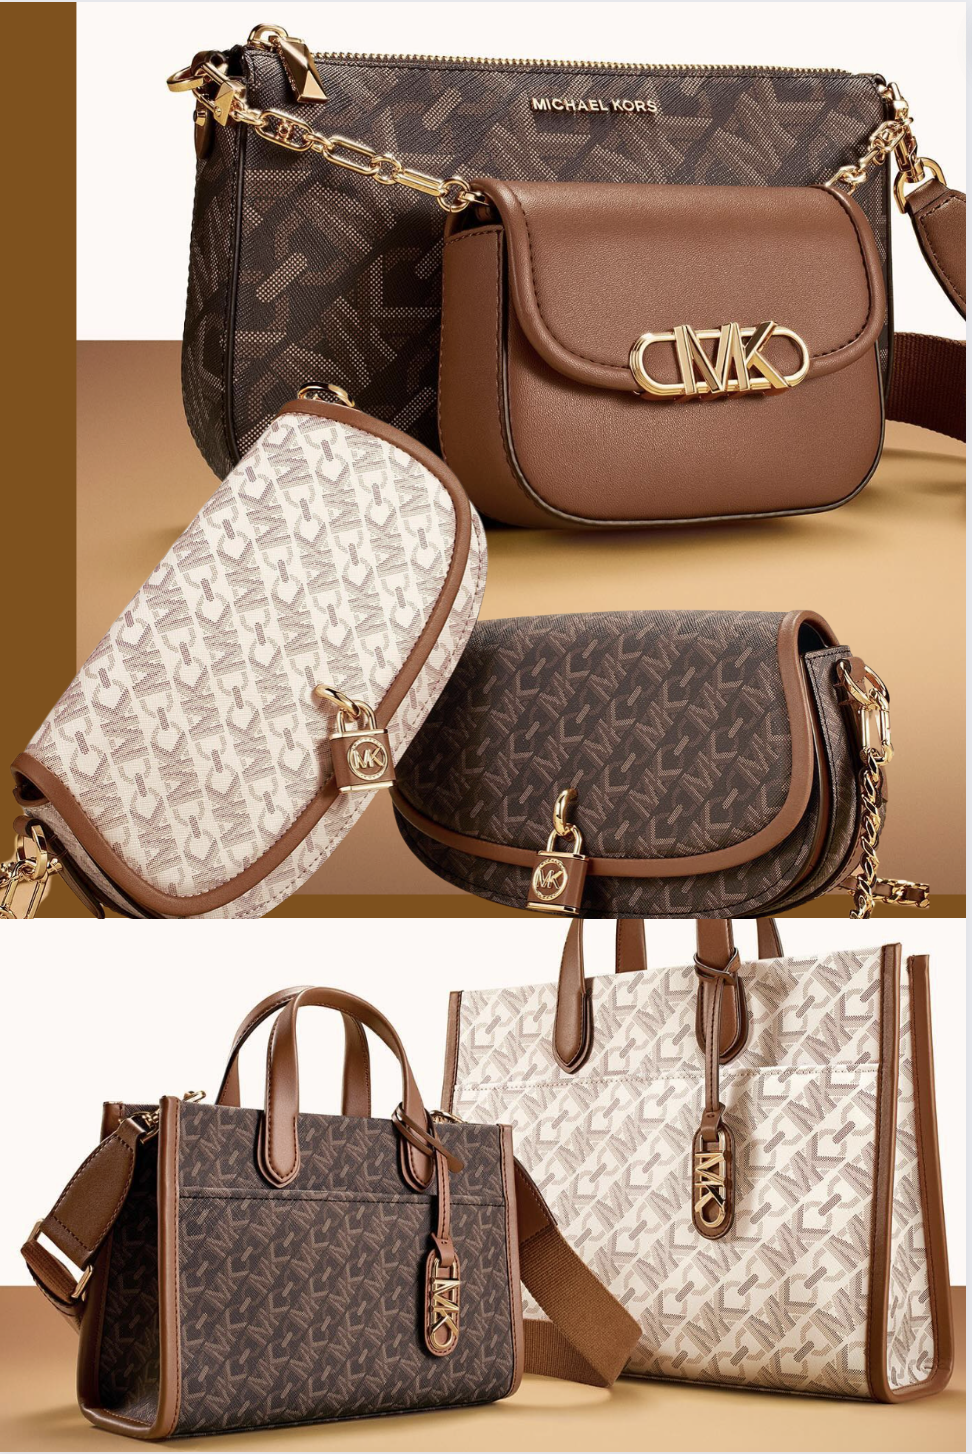 Michael Kors Medium Crossbody Tote Shoulder Handbag Bag meseenger Purse  Vanilla | eBay